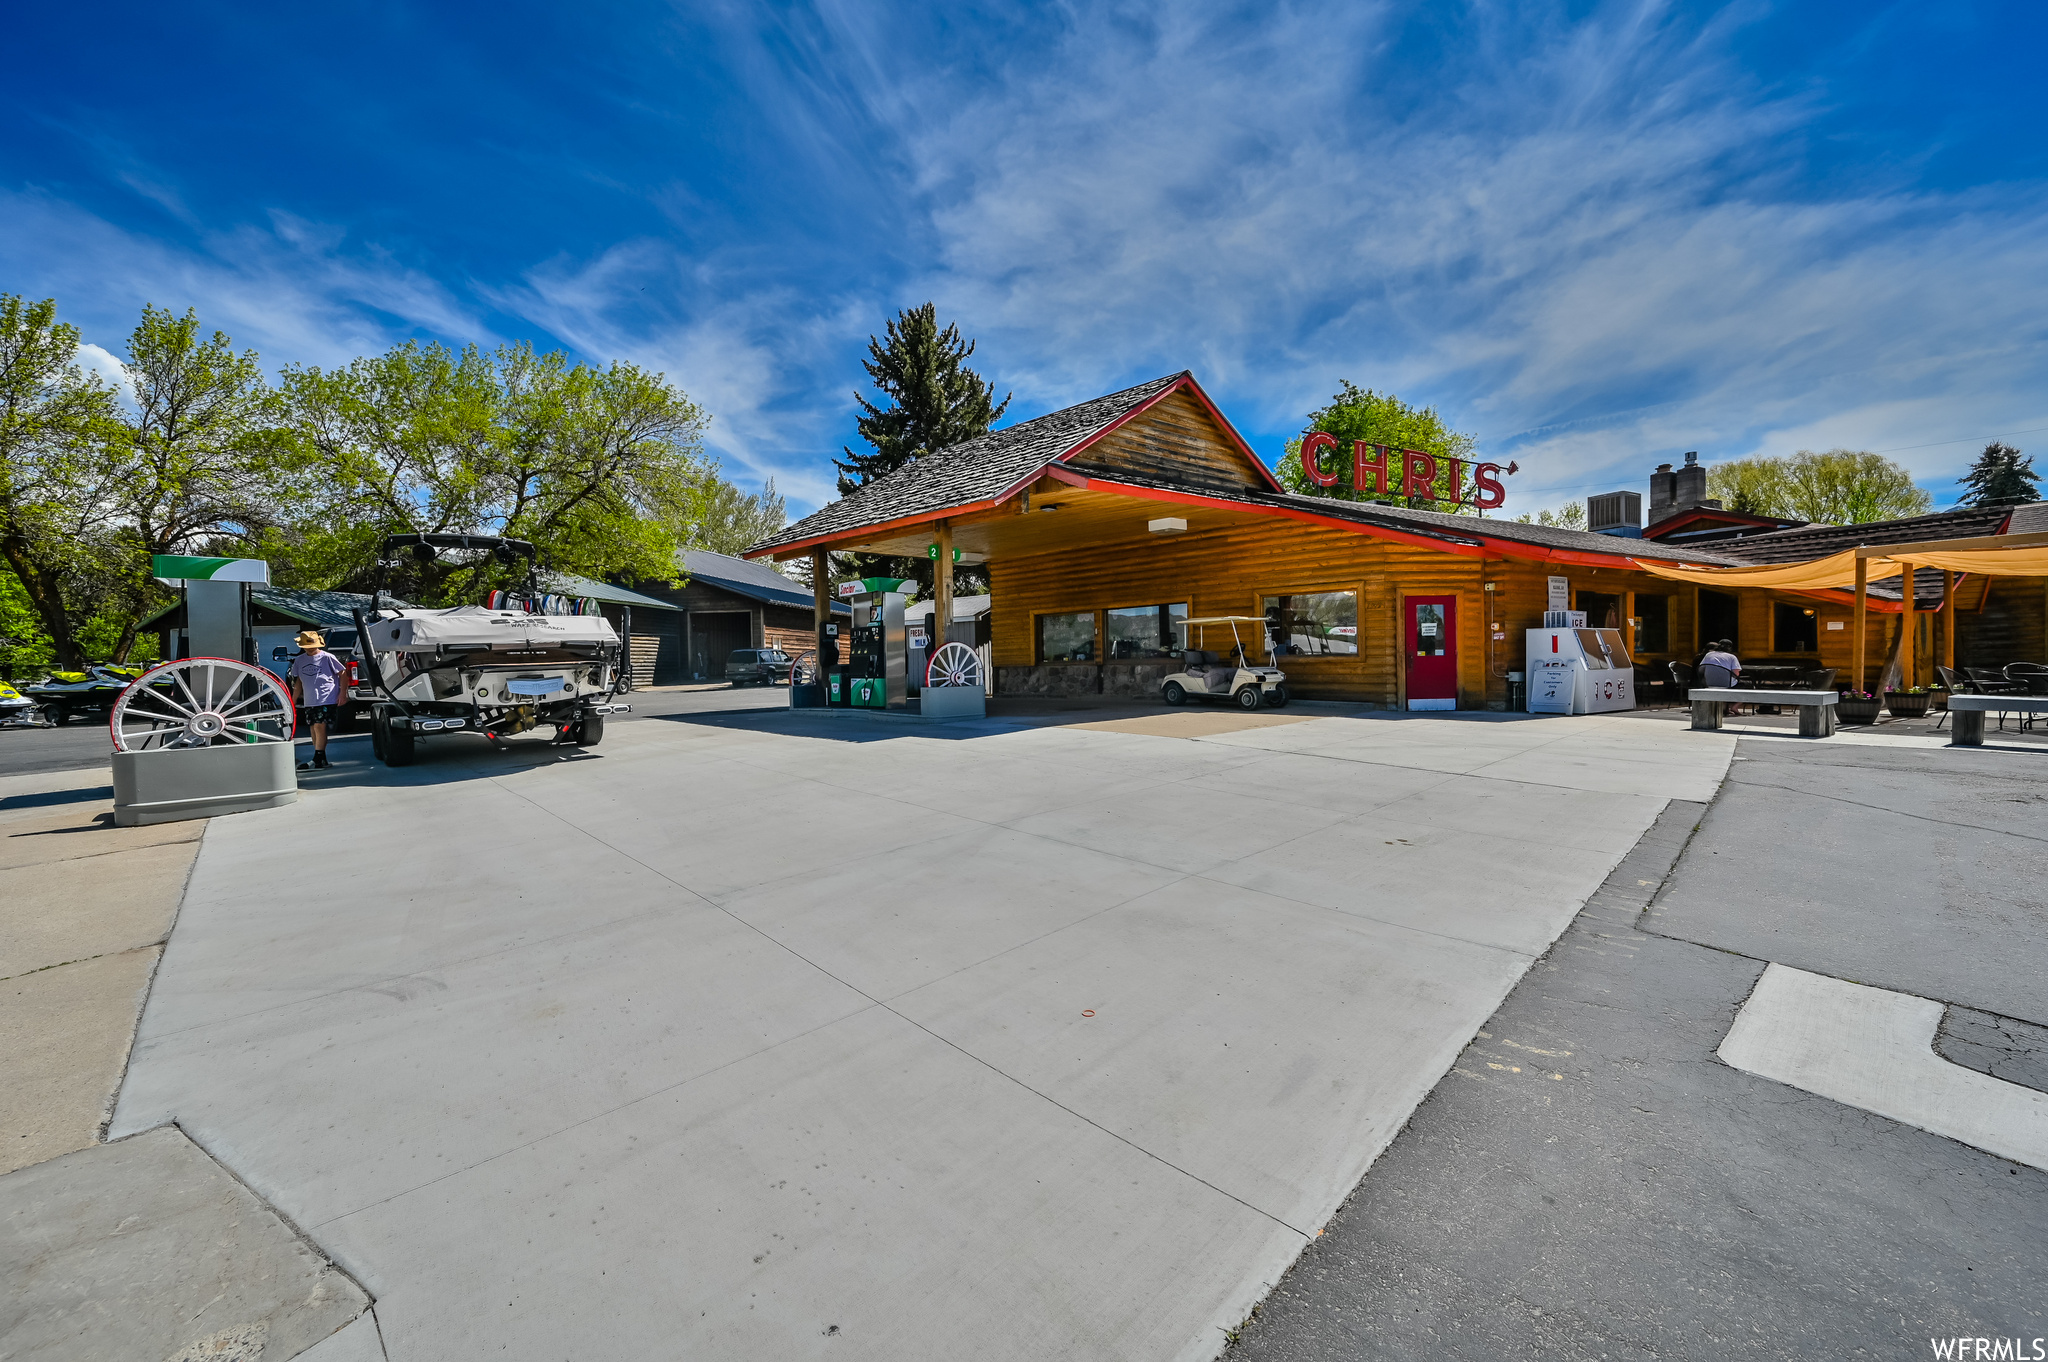 Gas Station/Convenient Store